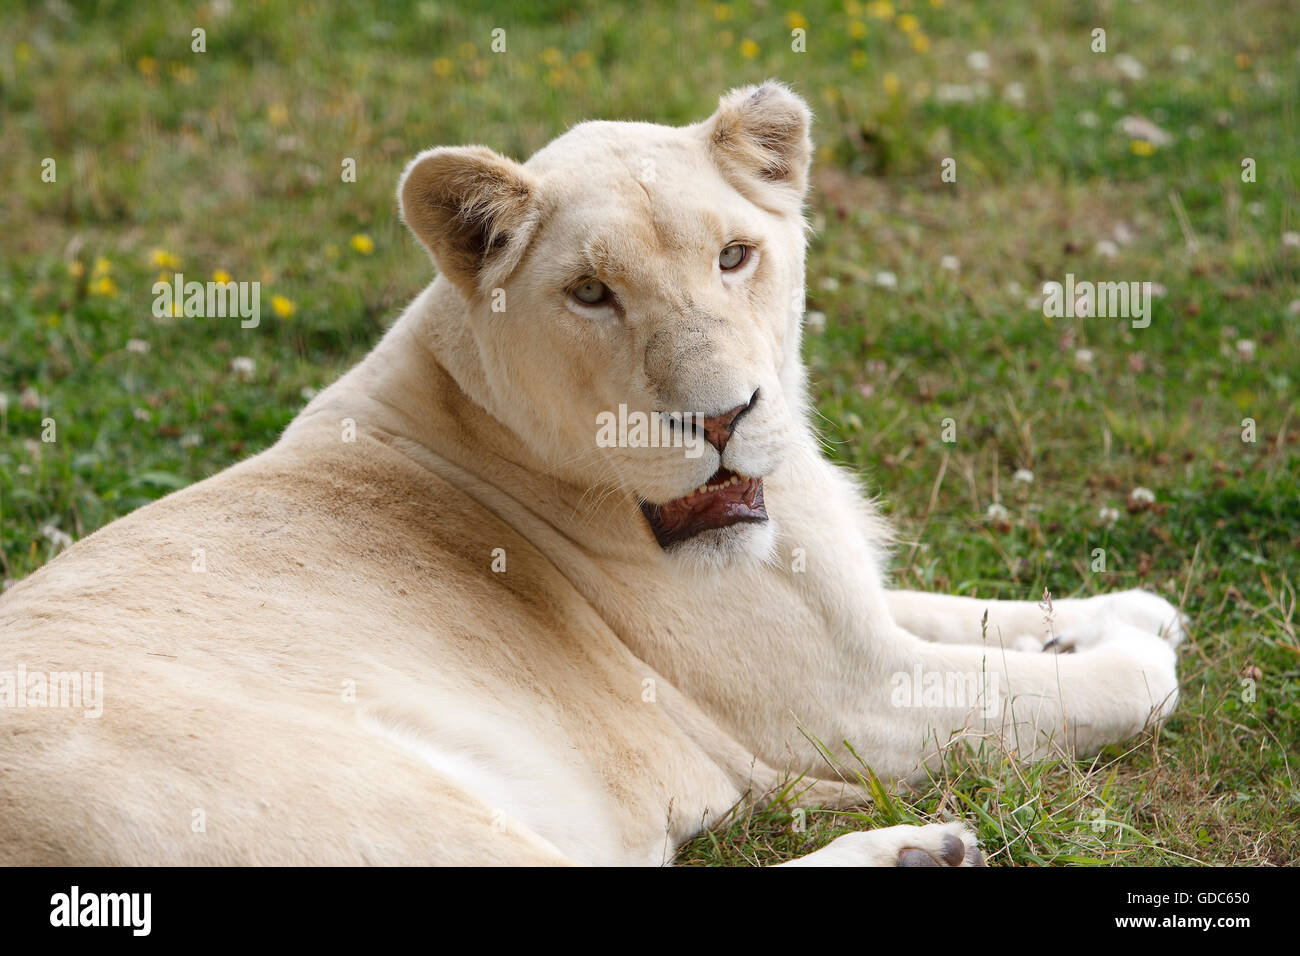 White Lion panthera leo krugensis, Femmina posa sull'erba Foto Stock